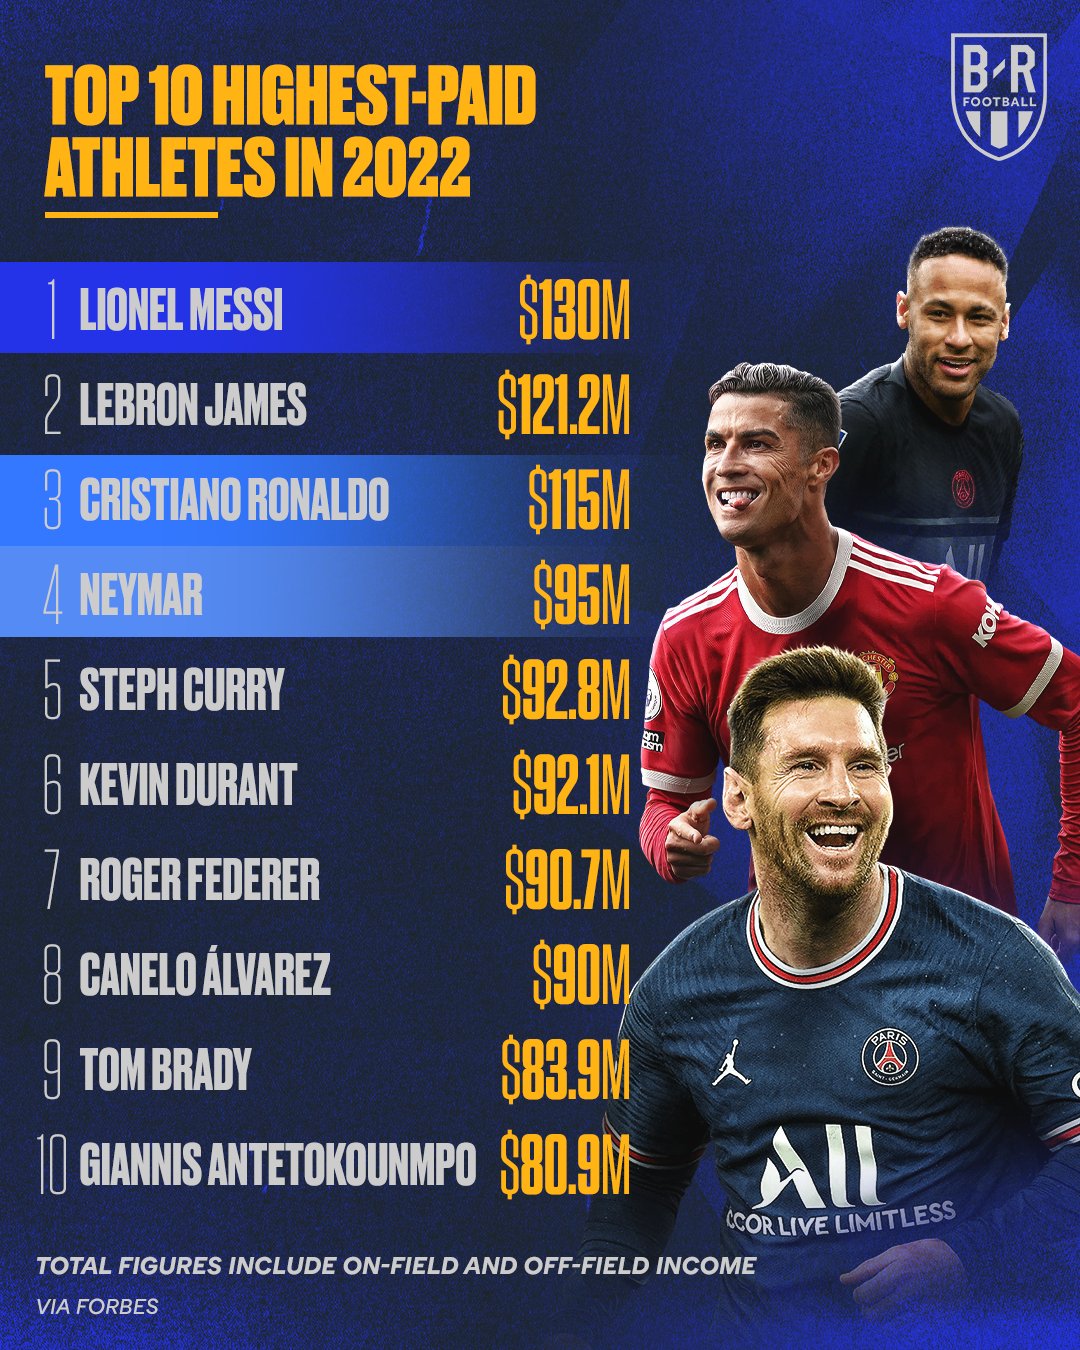 ¿Cuánto cobra Messi por usar Adidas